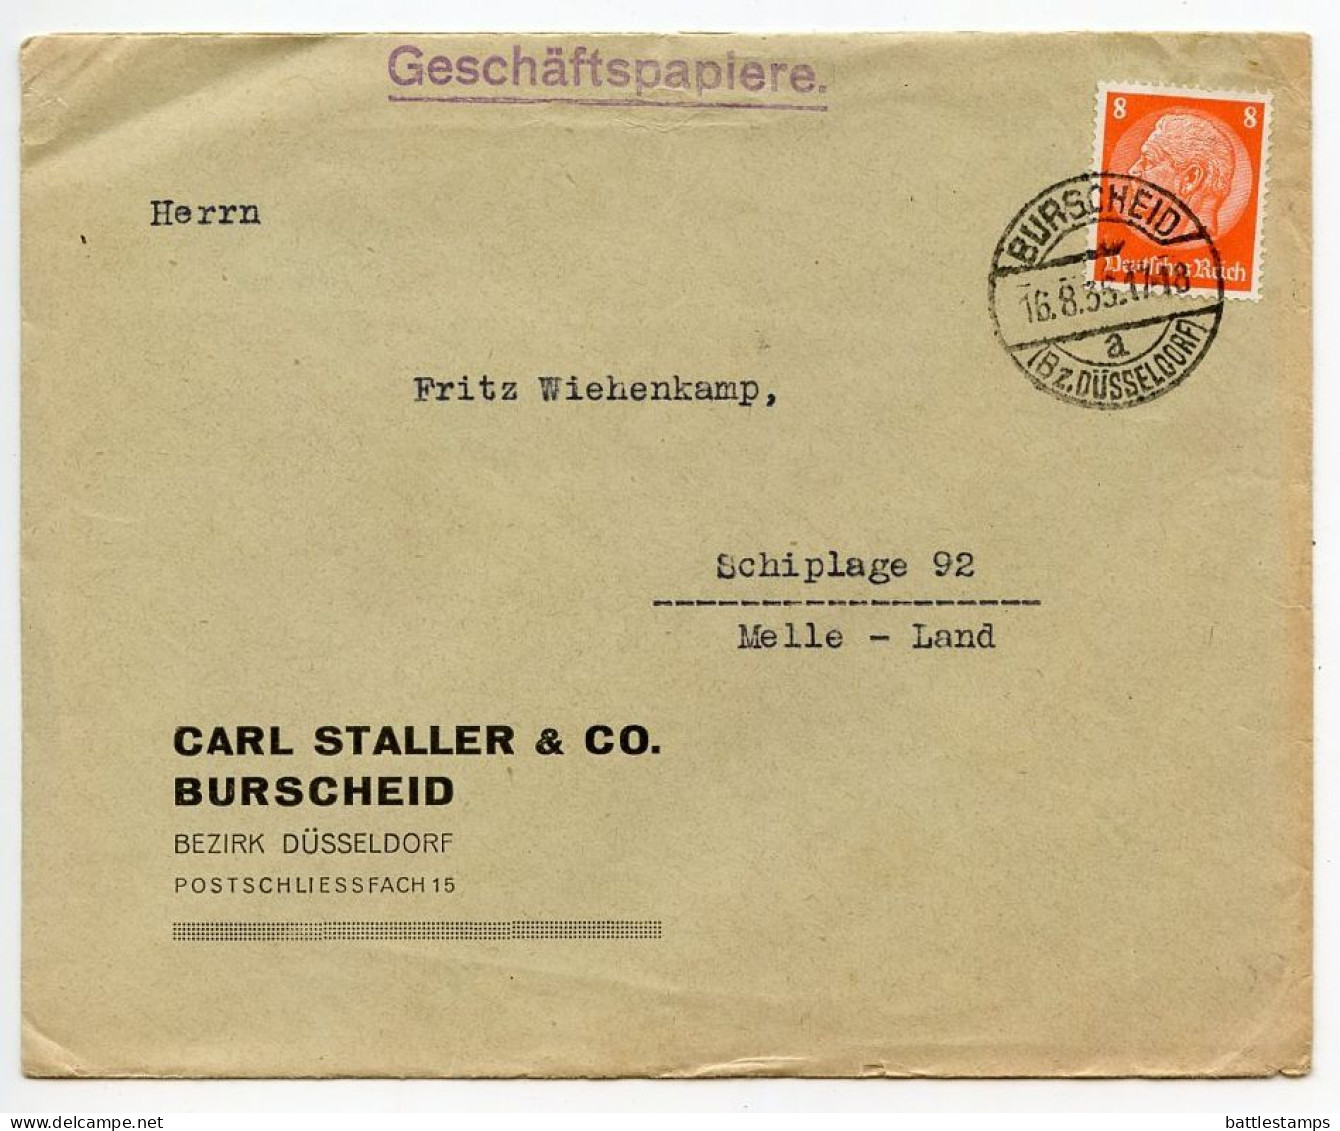 Germany 1935 Cover; Burscheid (Bz. Düsseldorf) - Carl Staller & Co. To Schiplage; 8pf. Hindenburg - Storia Postale